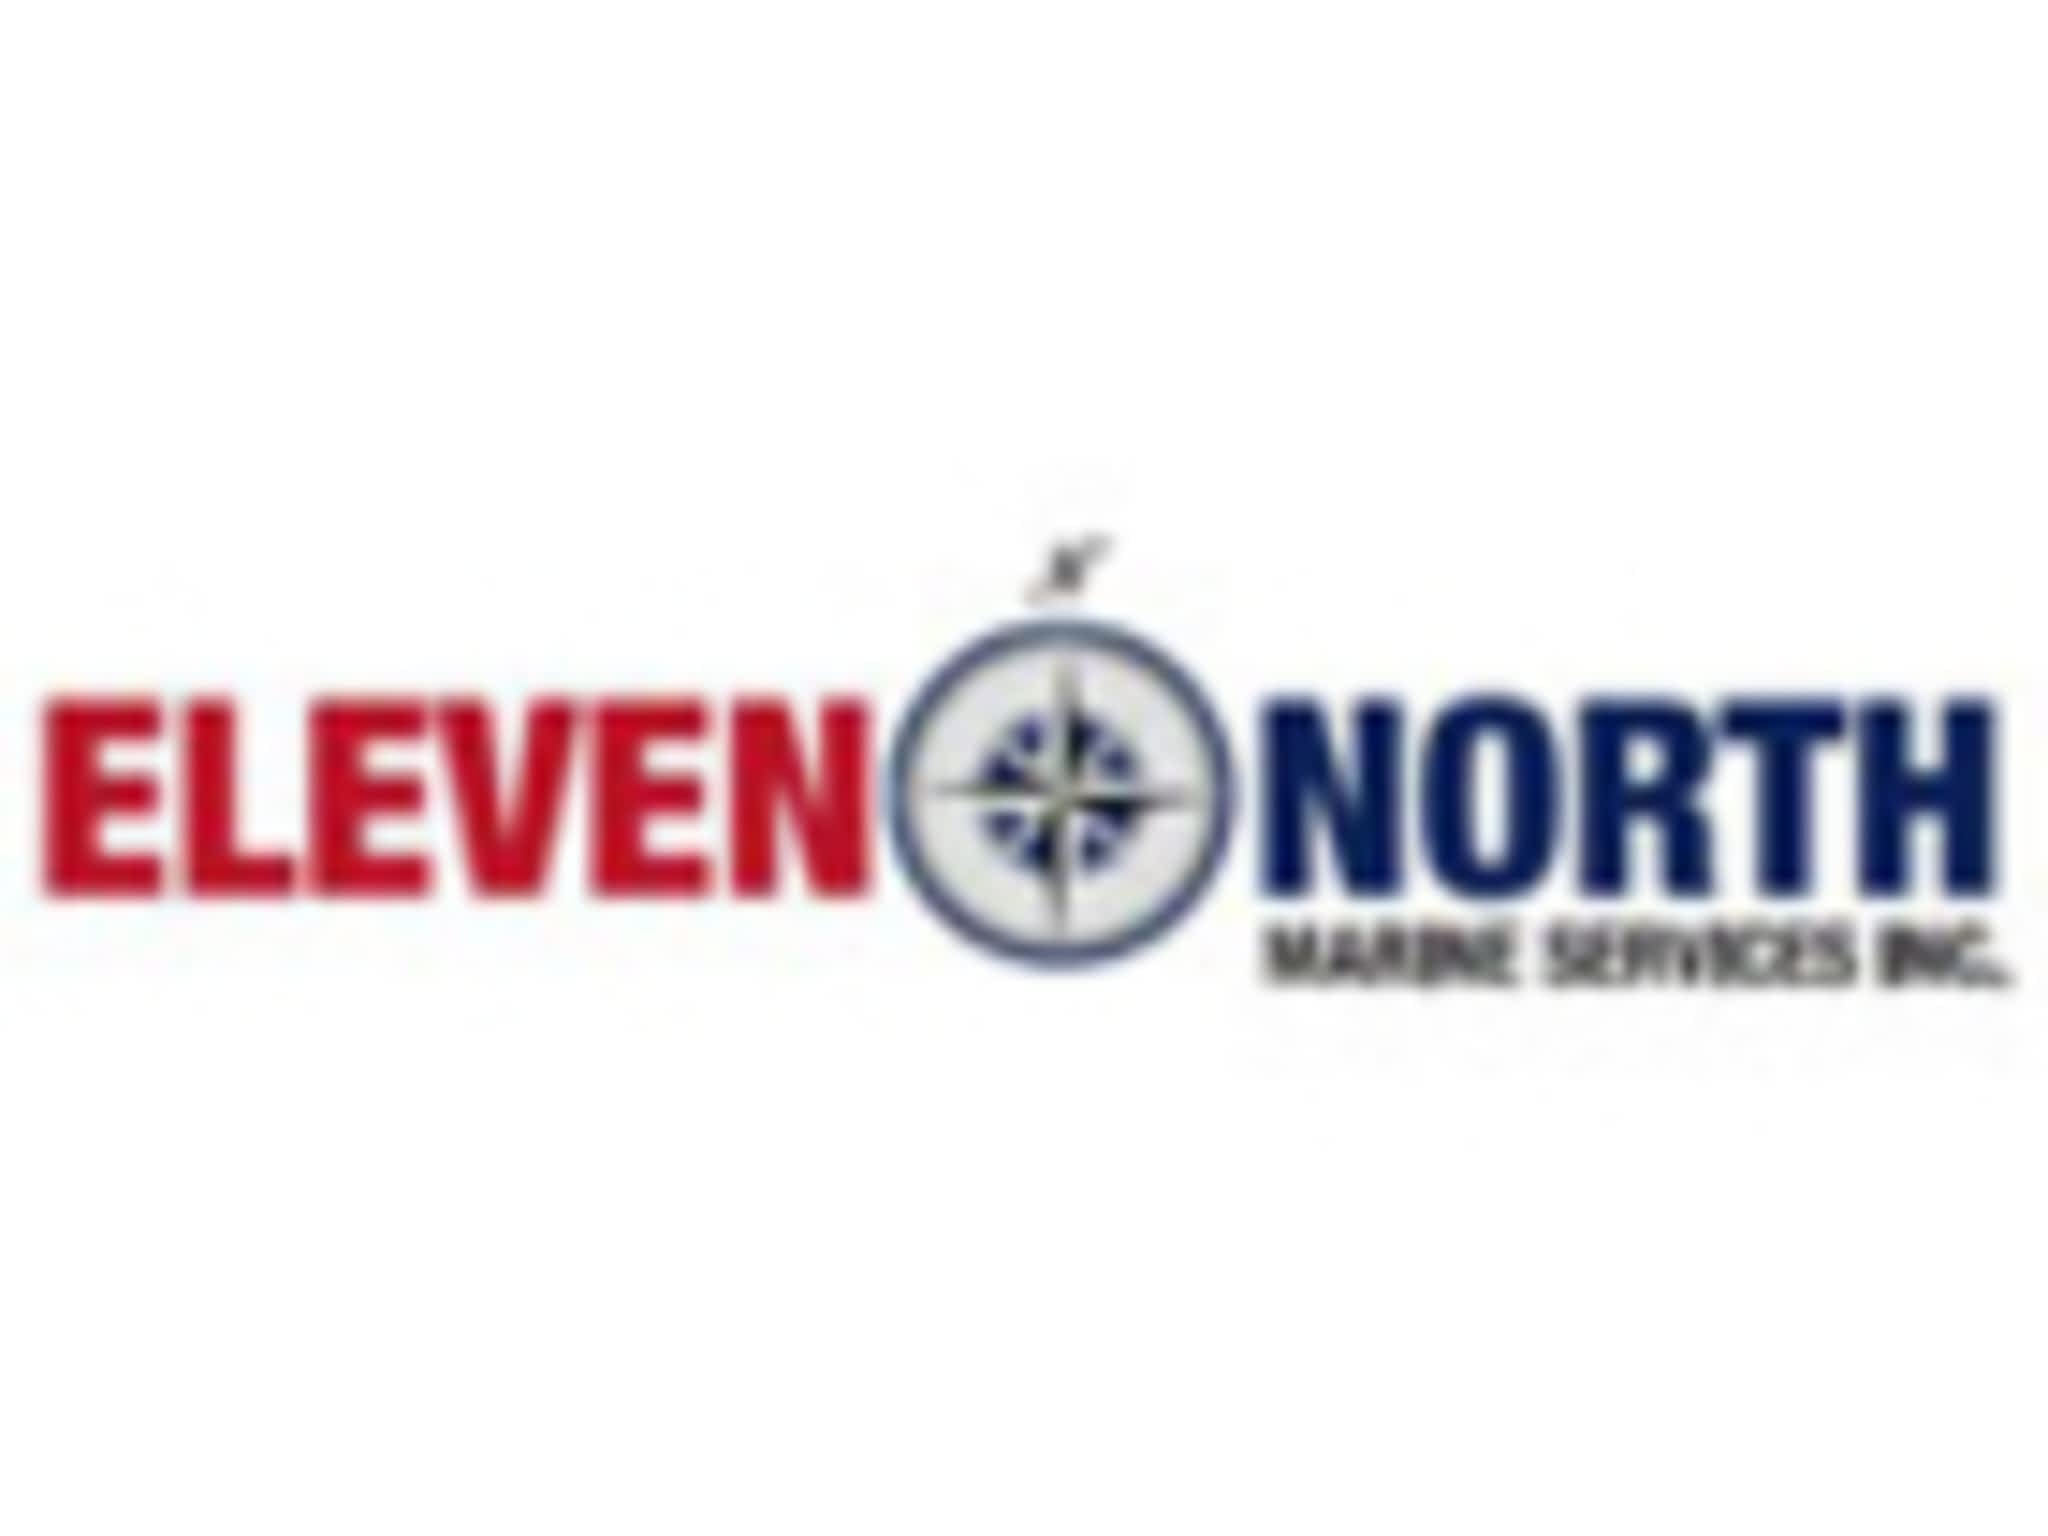 photo Eleven North Marine Services Inc